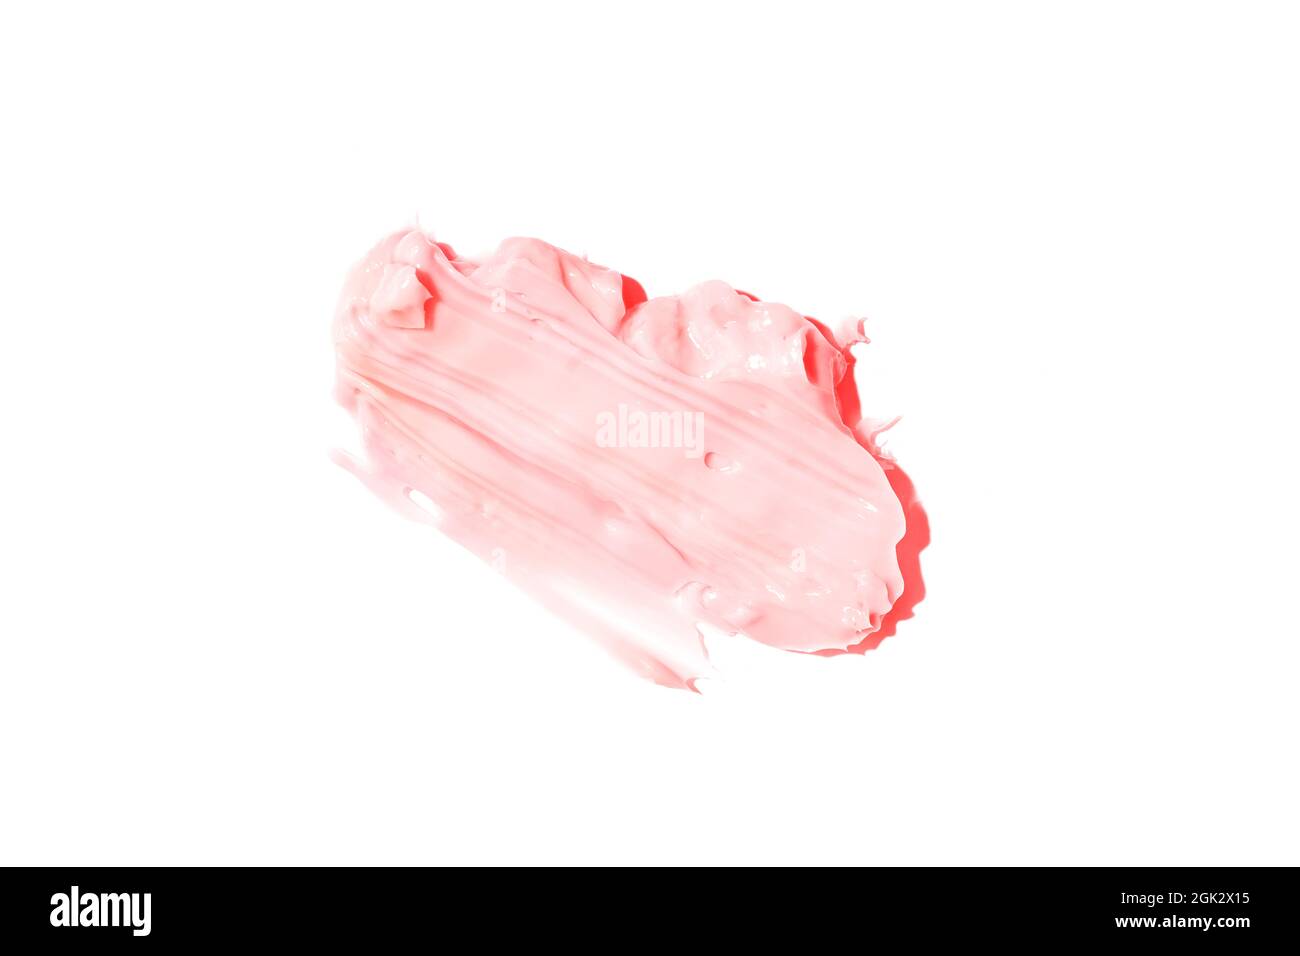 Der Abstrich und die Textur der Creme. Rosa Farbe isoliert auf weißem Hintergrund. Ein Element für kosmetisches Beauty-Design. Hochwertige Fotos Stockfoto